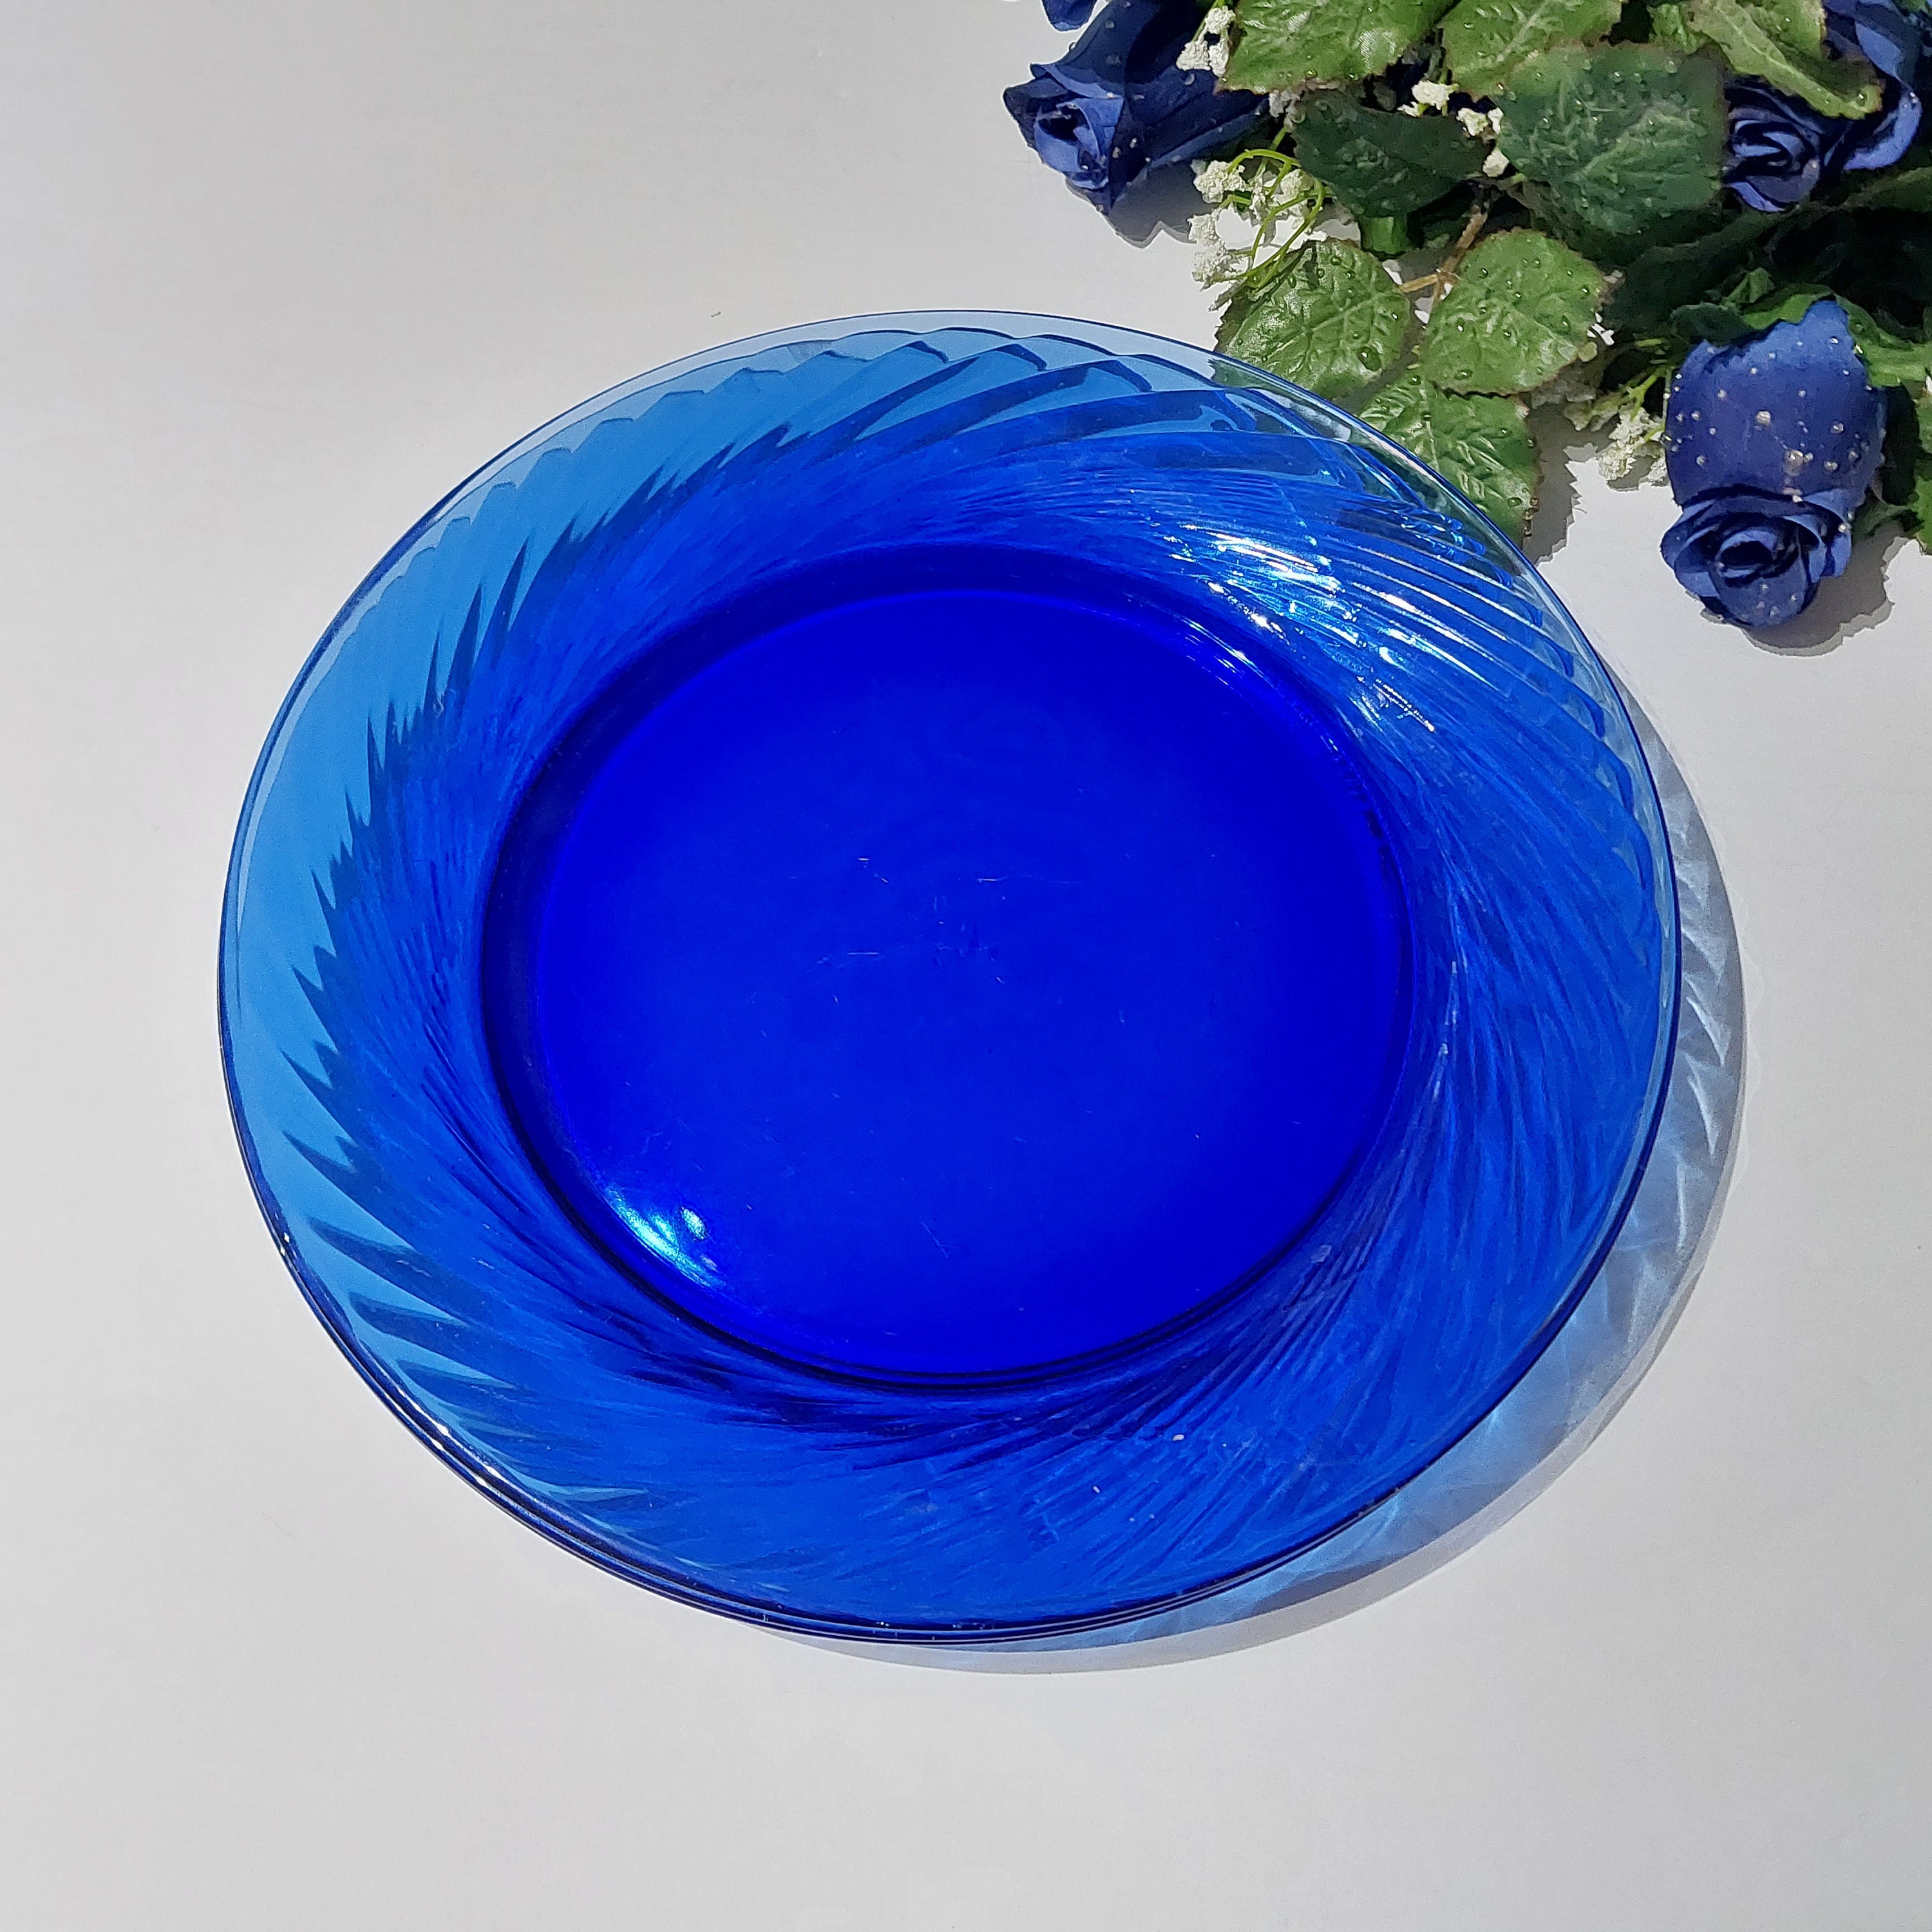 Piatti da pranzo in vetro blu, Pyrex FESTIVA Blu Cobalto, 10,75